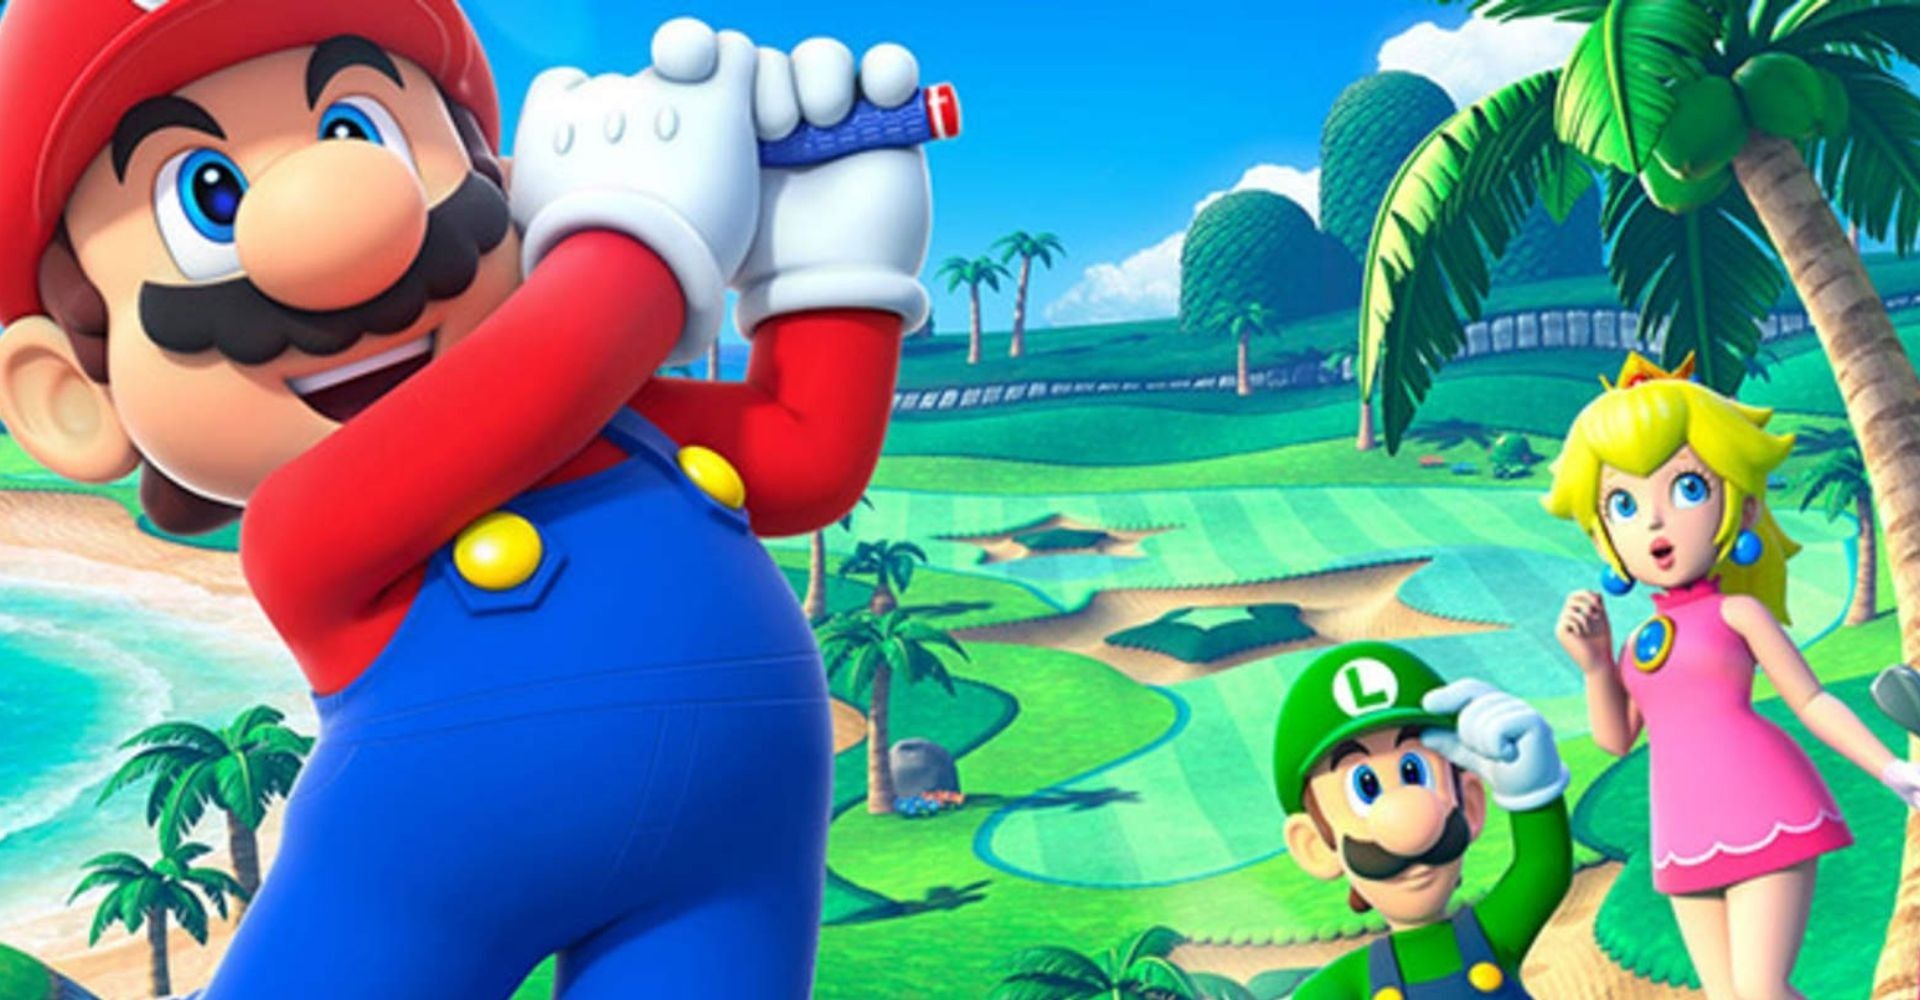 Mario Golf Super Rush encabeza las listas en el Reino Unido |